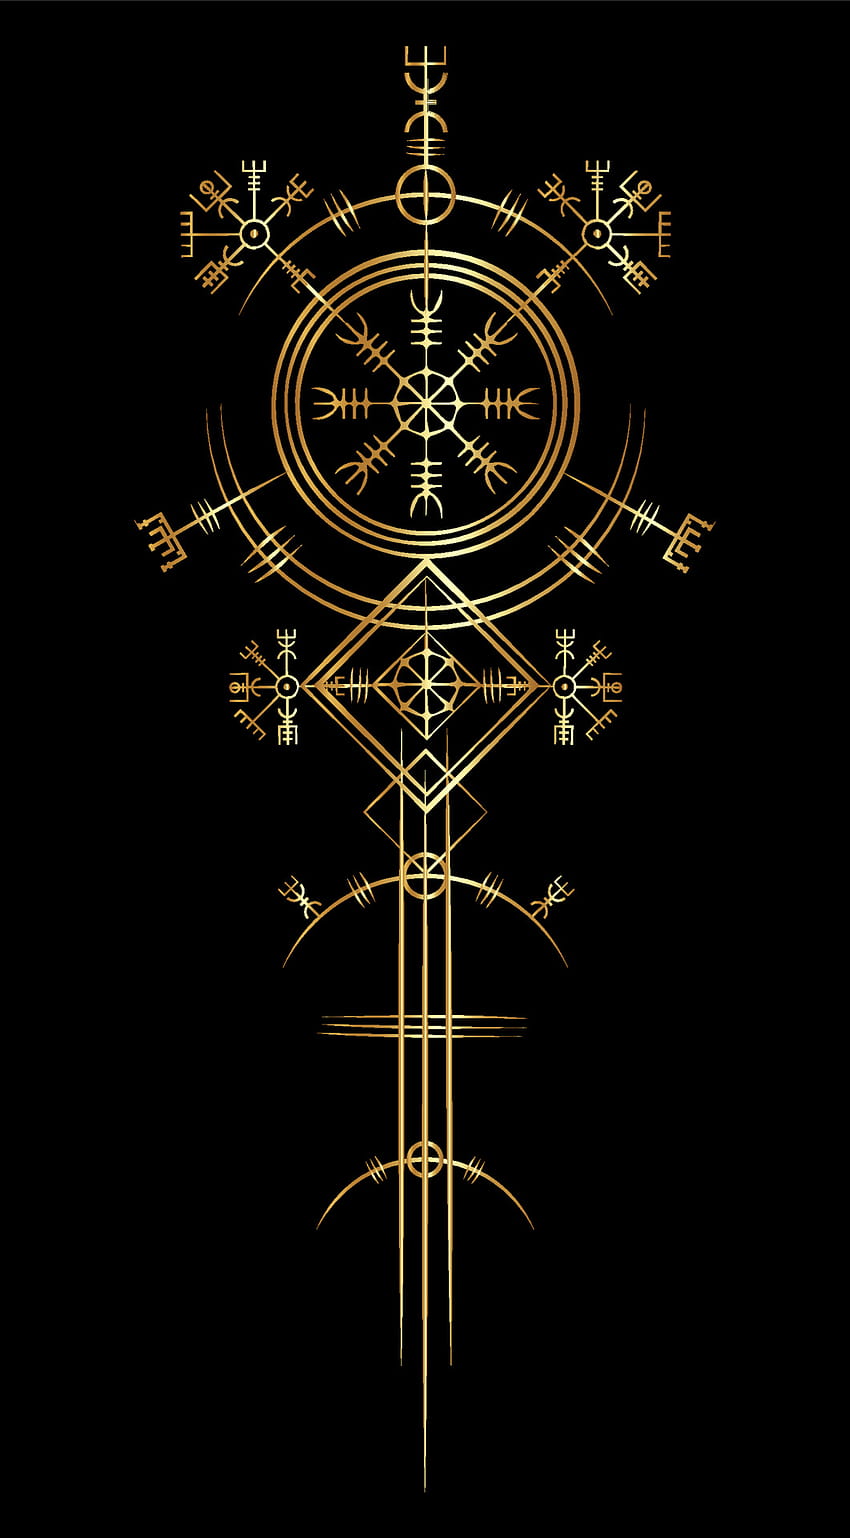 Mágico art déco vikingo antiguo, brújula de navegación Gold Vegvisir antigua. Los vikingos utilizaron muchos símbolos de acuerdo con la mitología nórdica, muy utilizados en la sociedad vikinga. Logo icon Wiccan signo esotérico 3727193 Vector, símbolos antiguos fondo de pantalla del teléfono